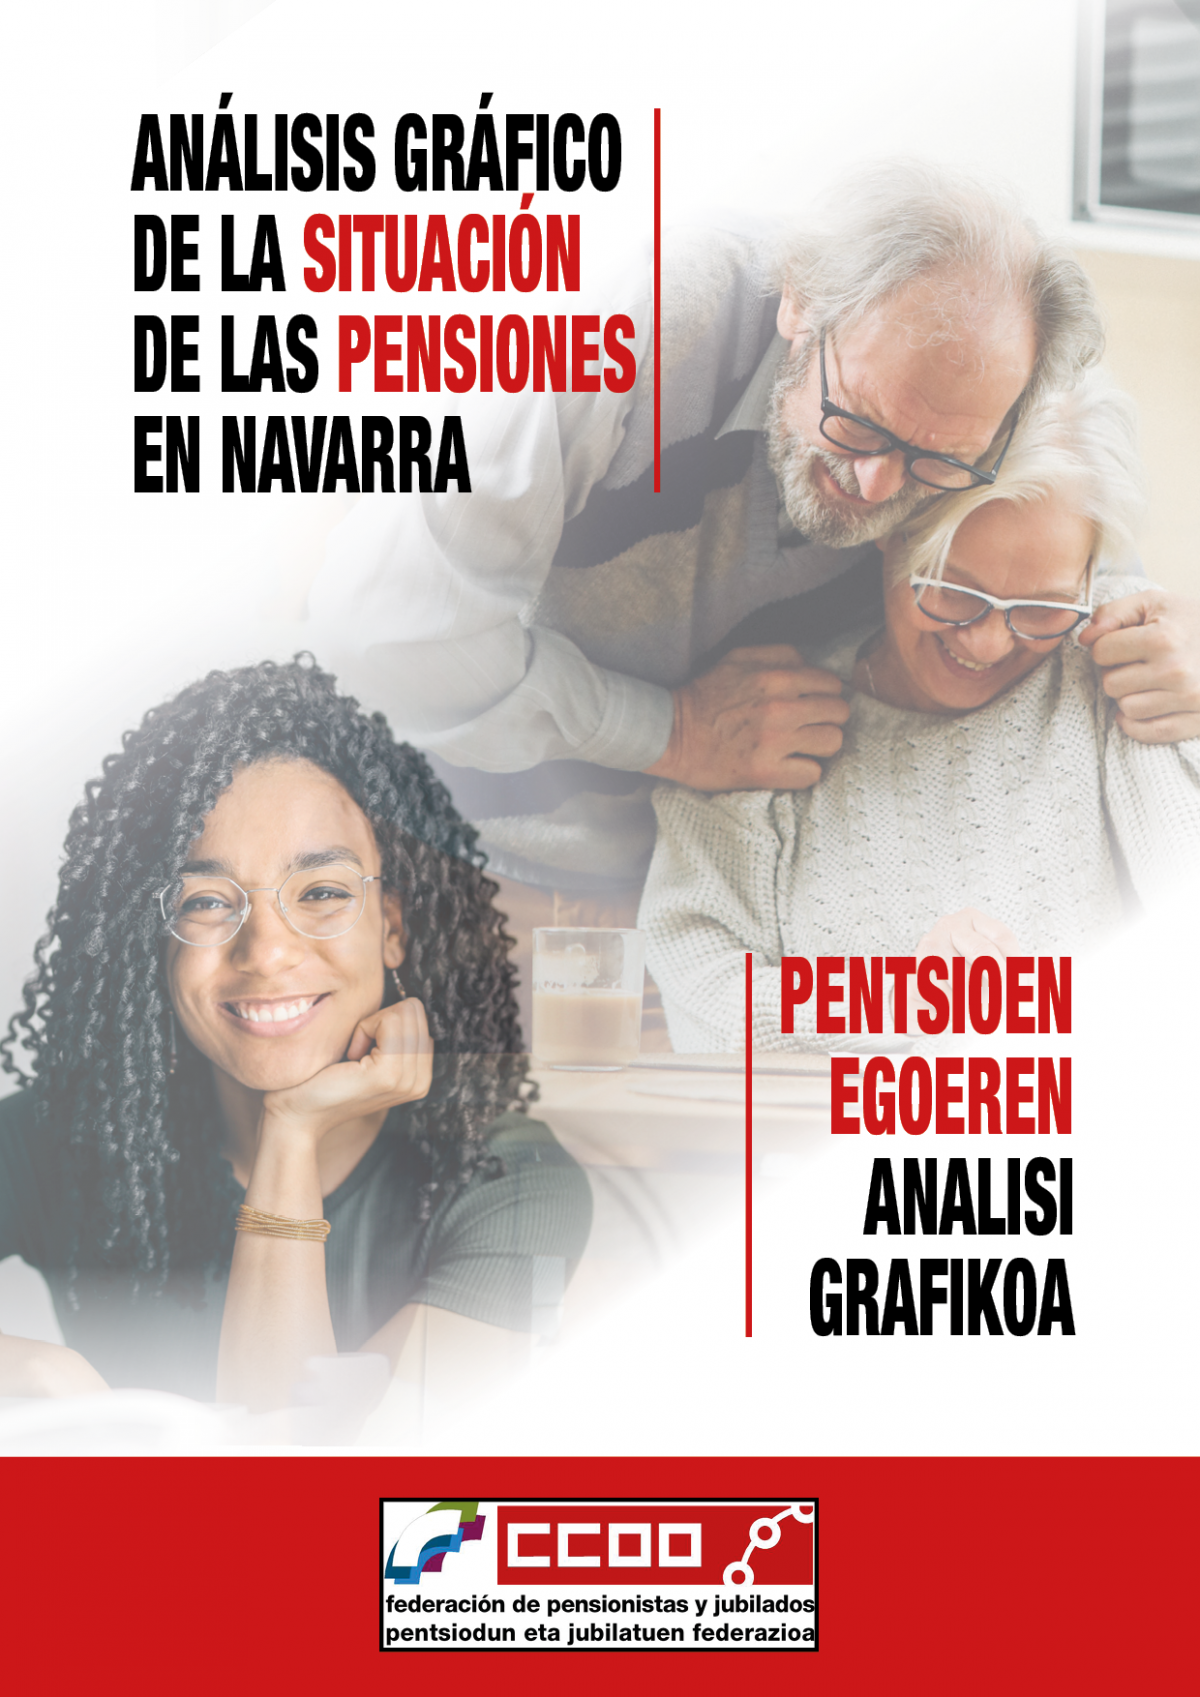 Anlisis grfico de la siuaicn de las pensiones en Navarra